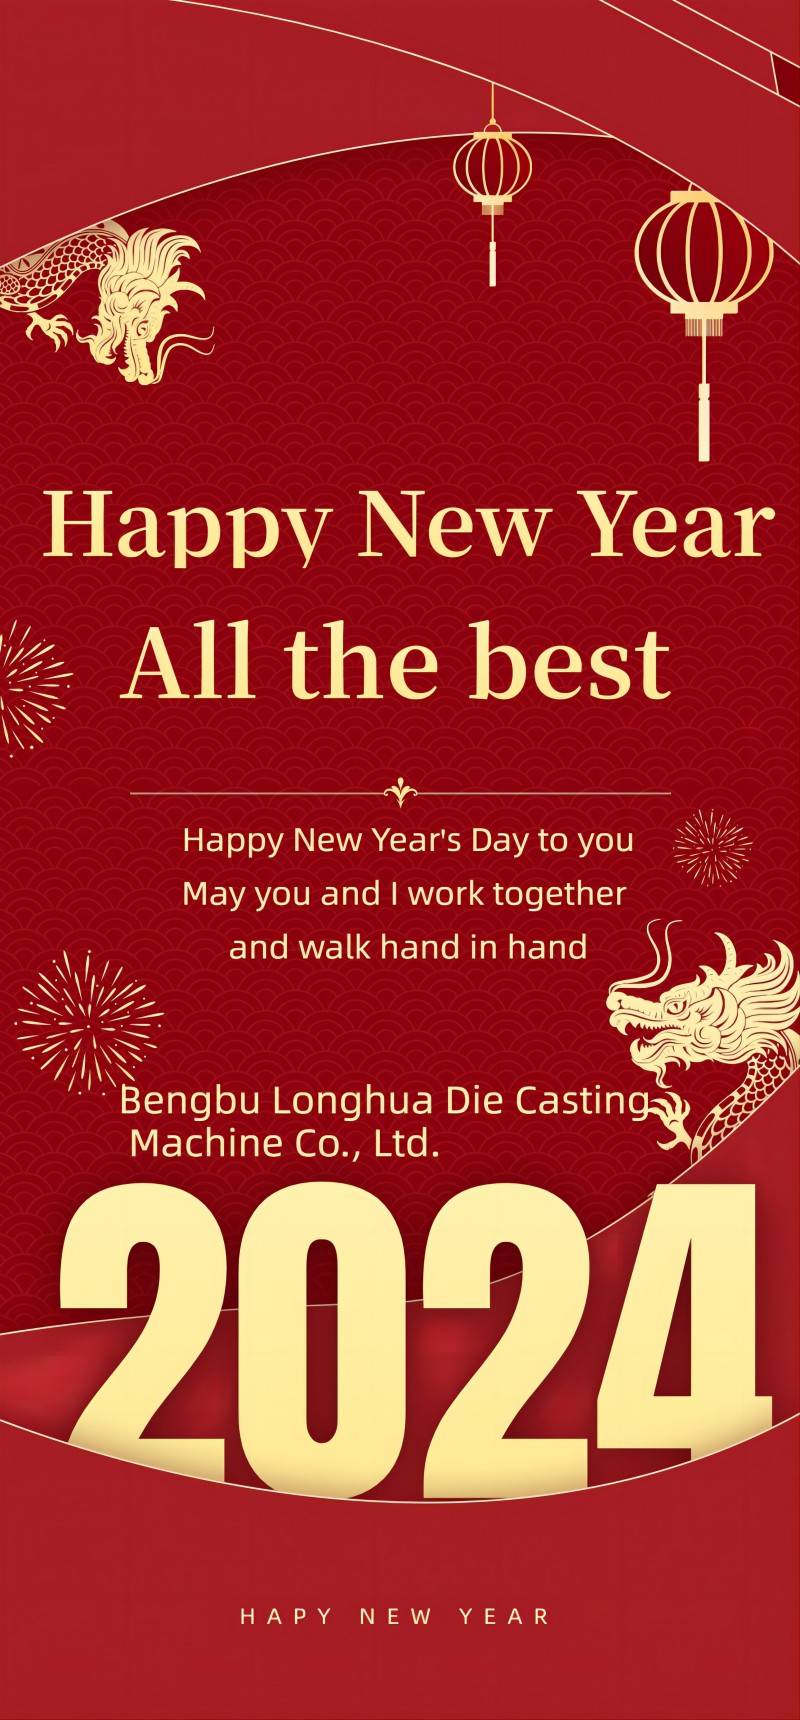 Bengbu Longhua Die Casting Machine Co., Ltd. Mitteilung über Neujahrsfeiertage
    